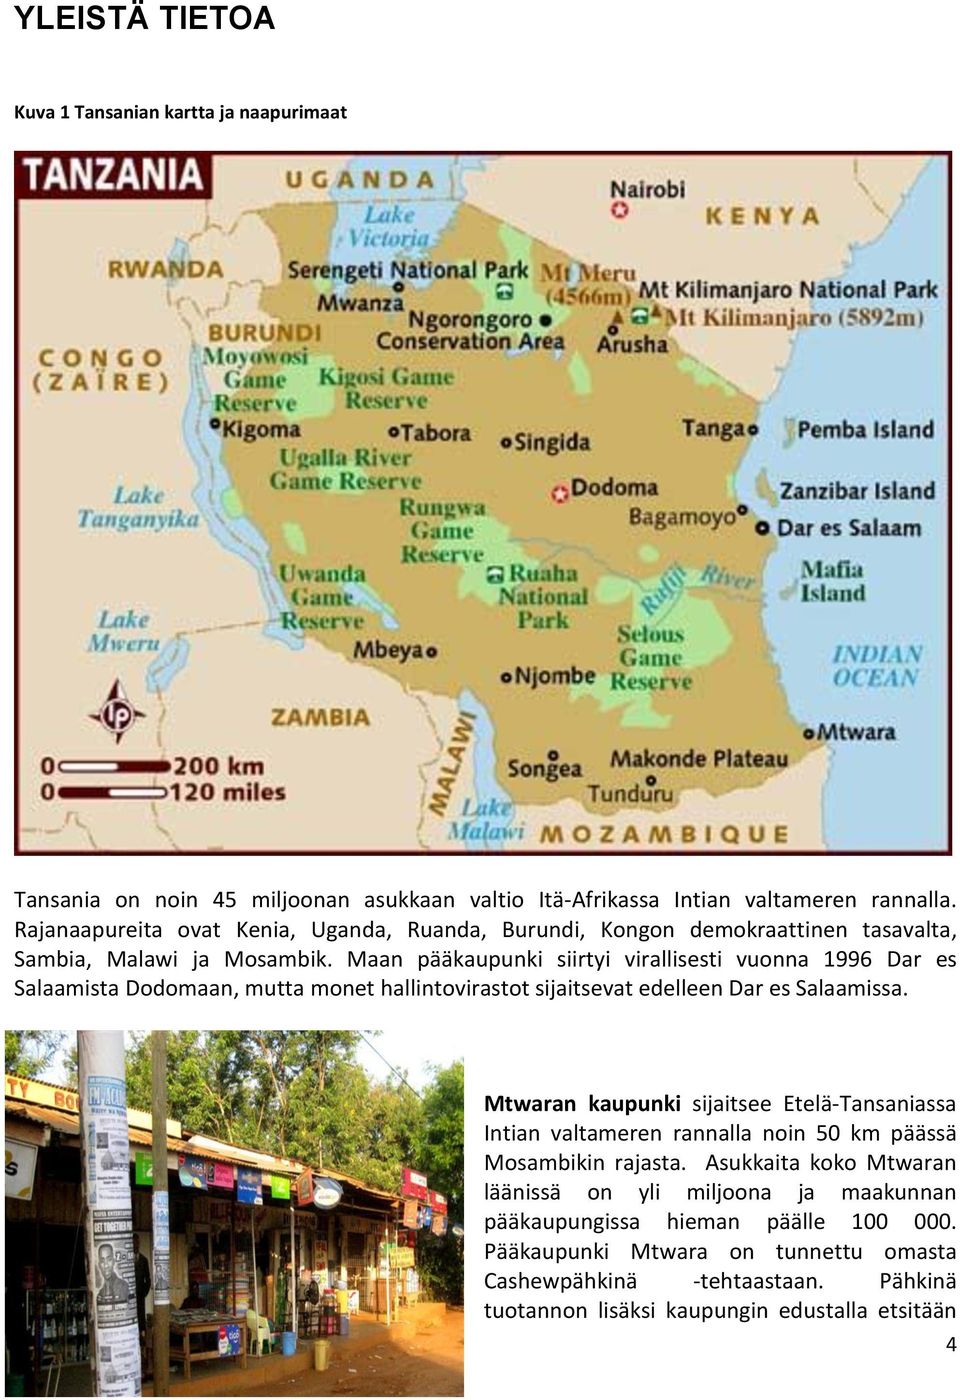 Maan pääkaupunki siirtyi virallisesti vuonna 1996 Dar es Salaamista Dodomaan, mutta monet hallintovirastot sijaitsevat edelleen Dar es Salaamissa.